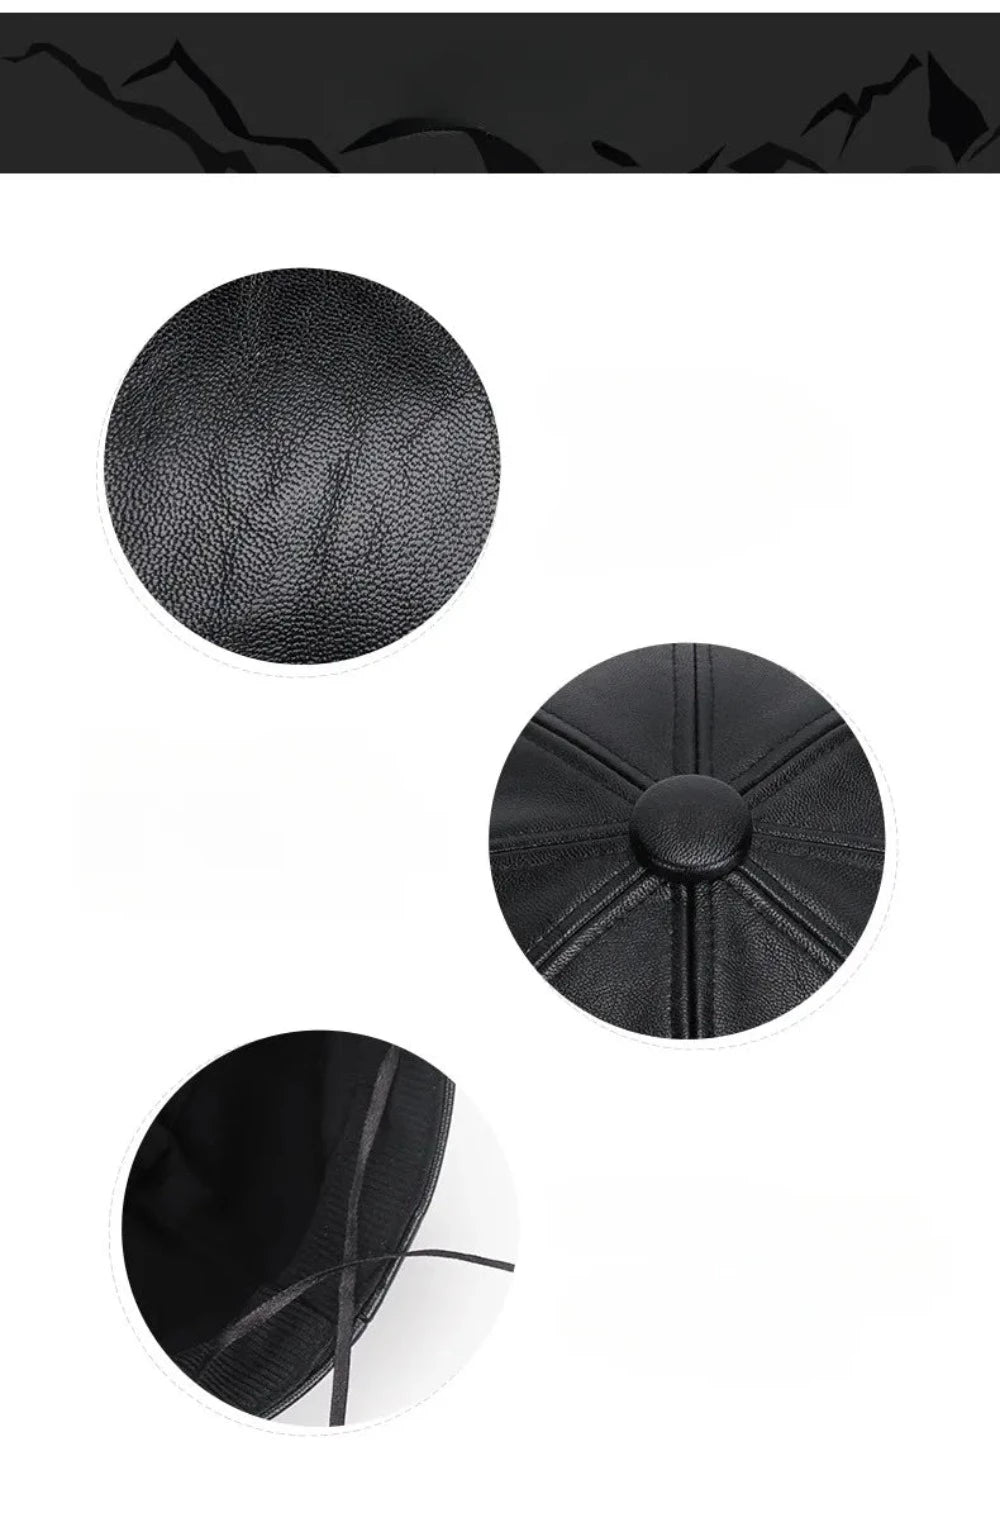 Faux Leather Adjustable Beret Cap - Festigal